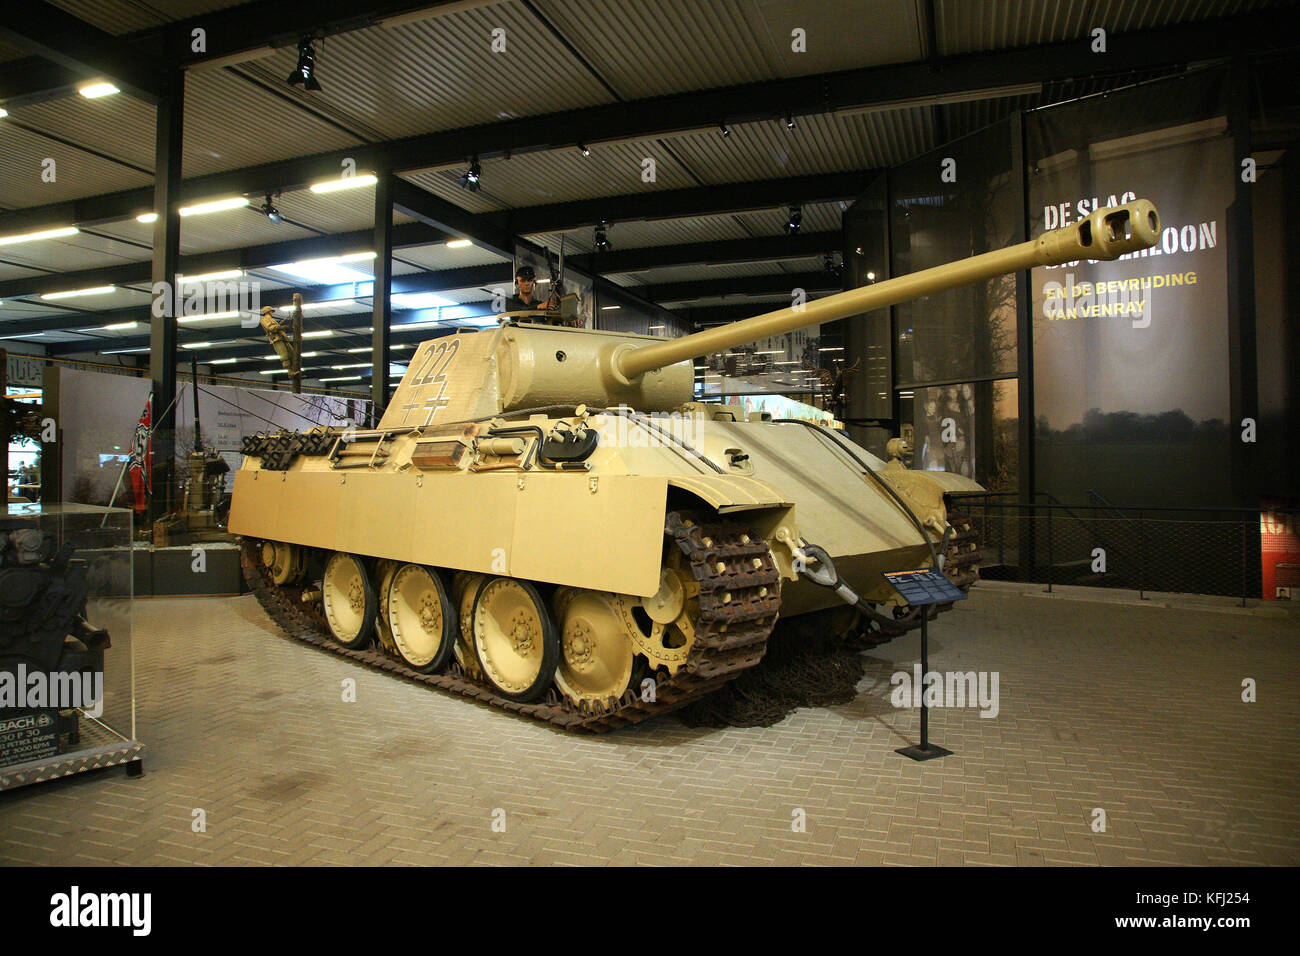 L'allemand WW2 tank Panther conservé au Musée de la guerre, Pays-Bas Overloon Banque D'Images